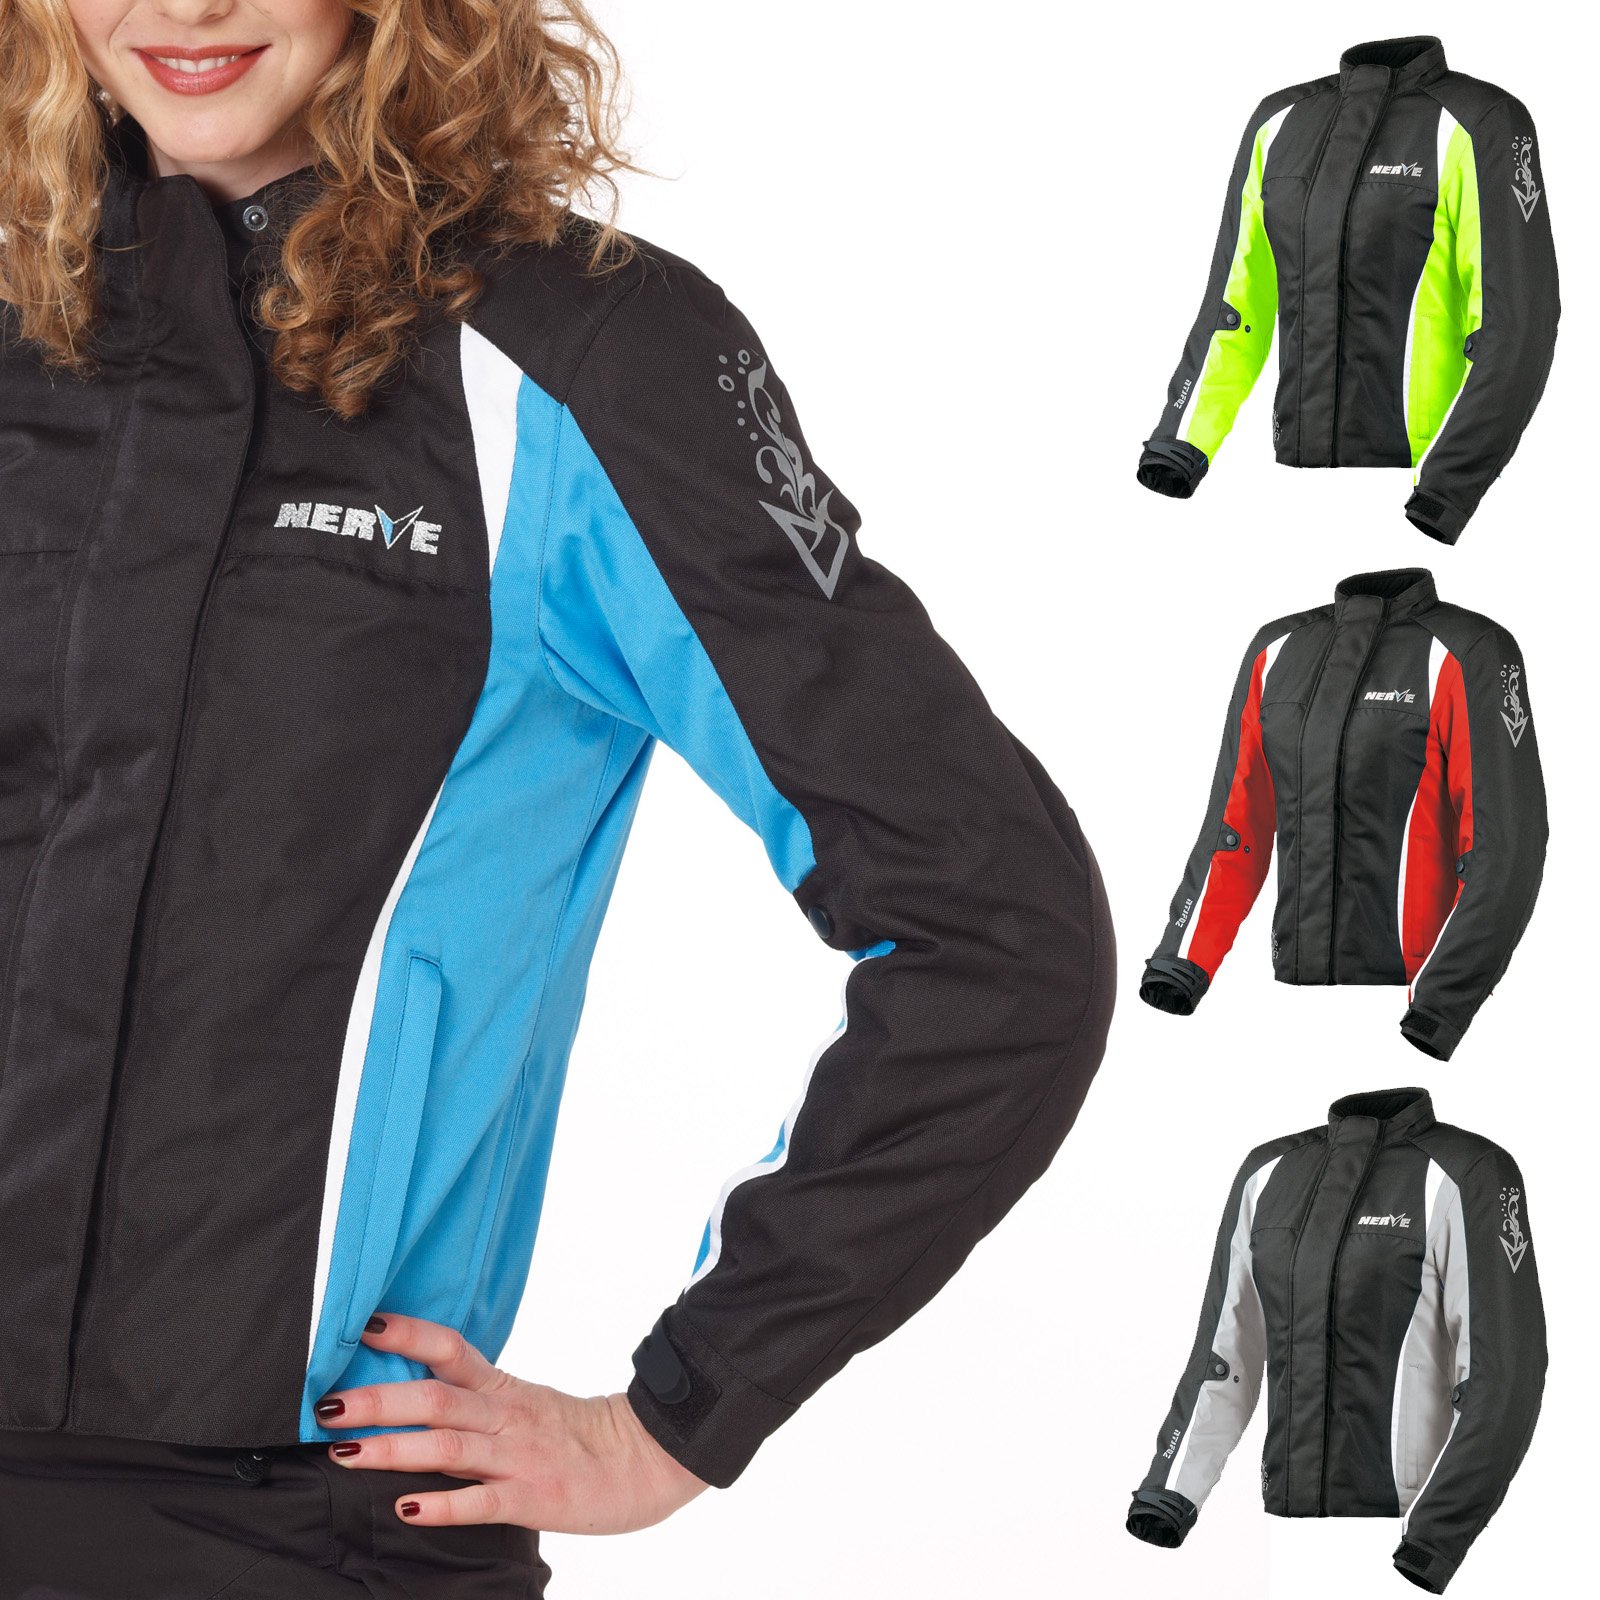 Nerve Shop Motorradjacke -Unique- Motorrad Damen Wasserdicht Jacke mit Protektoren Sommer Winter Textil Frauen - schwarz-blau - 40